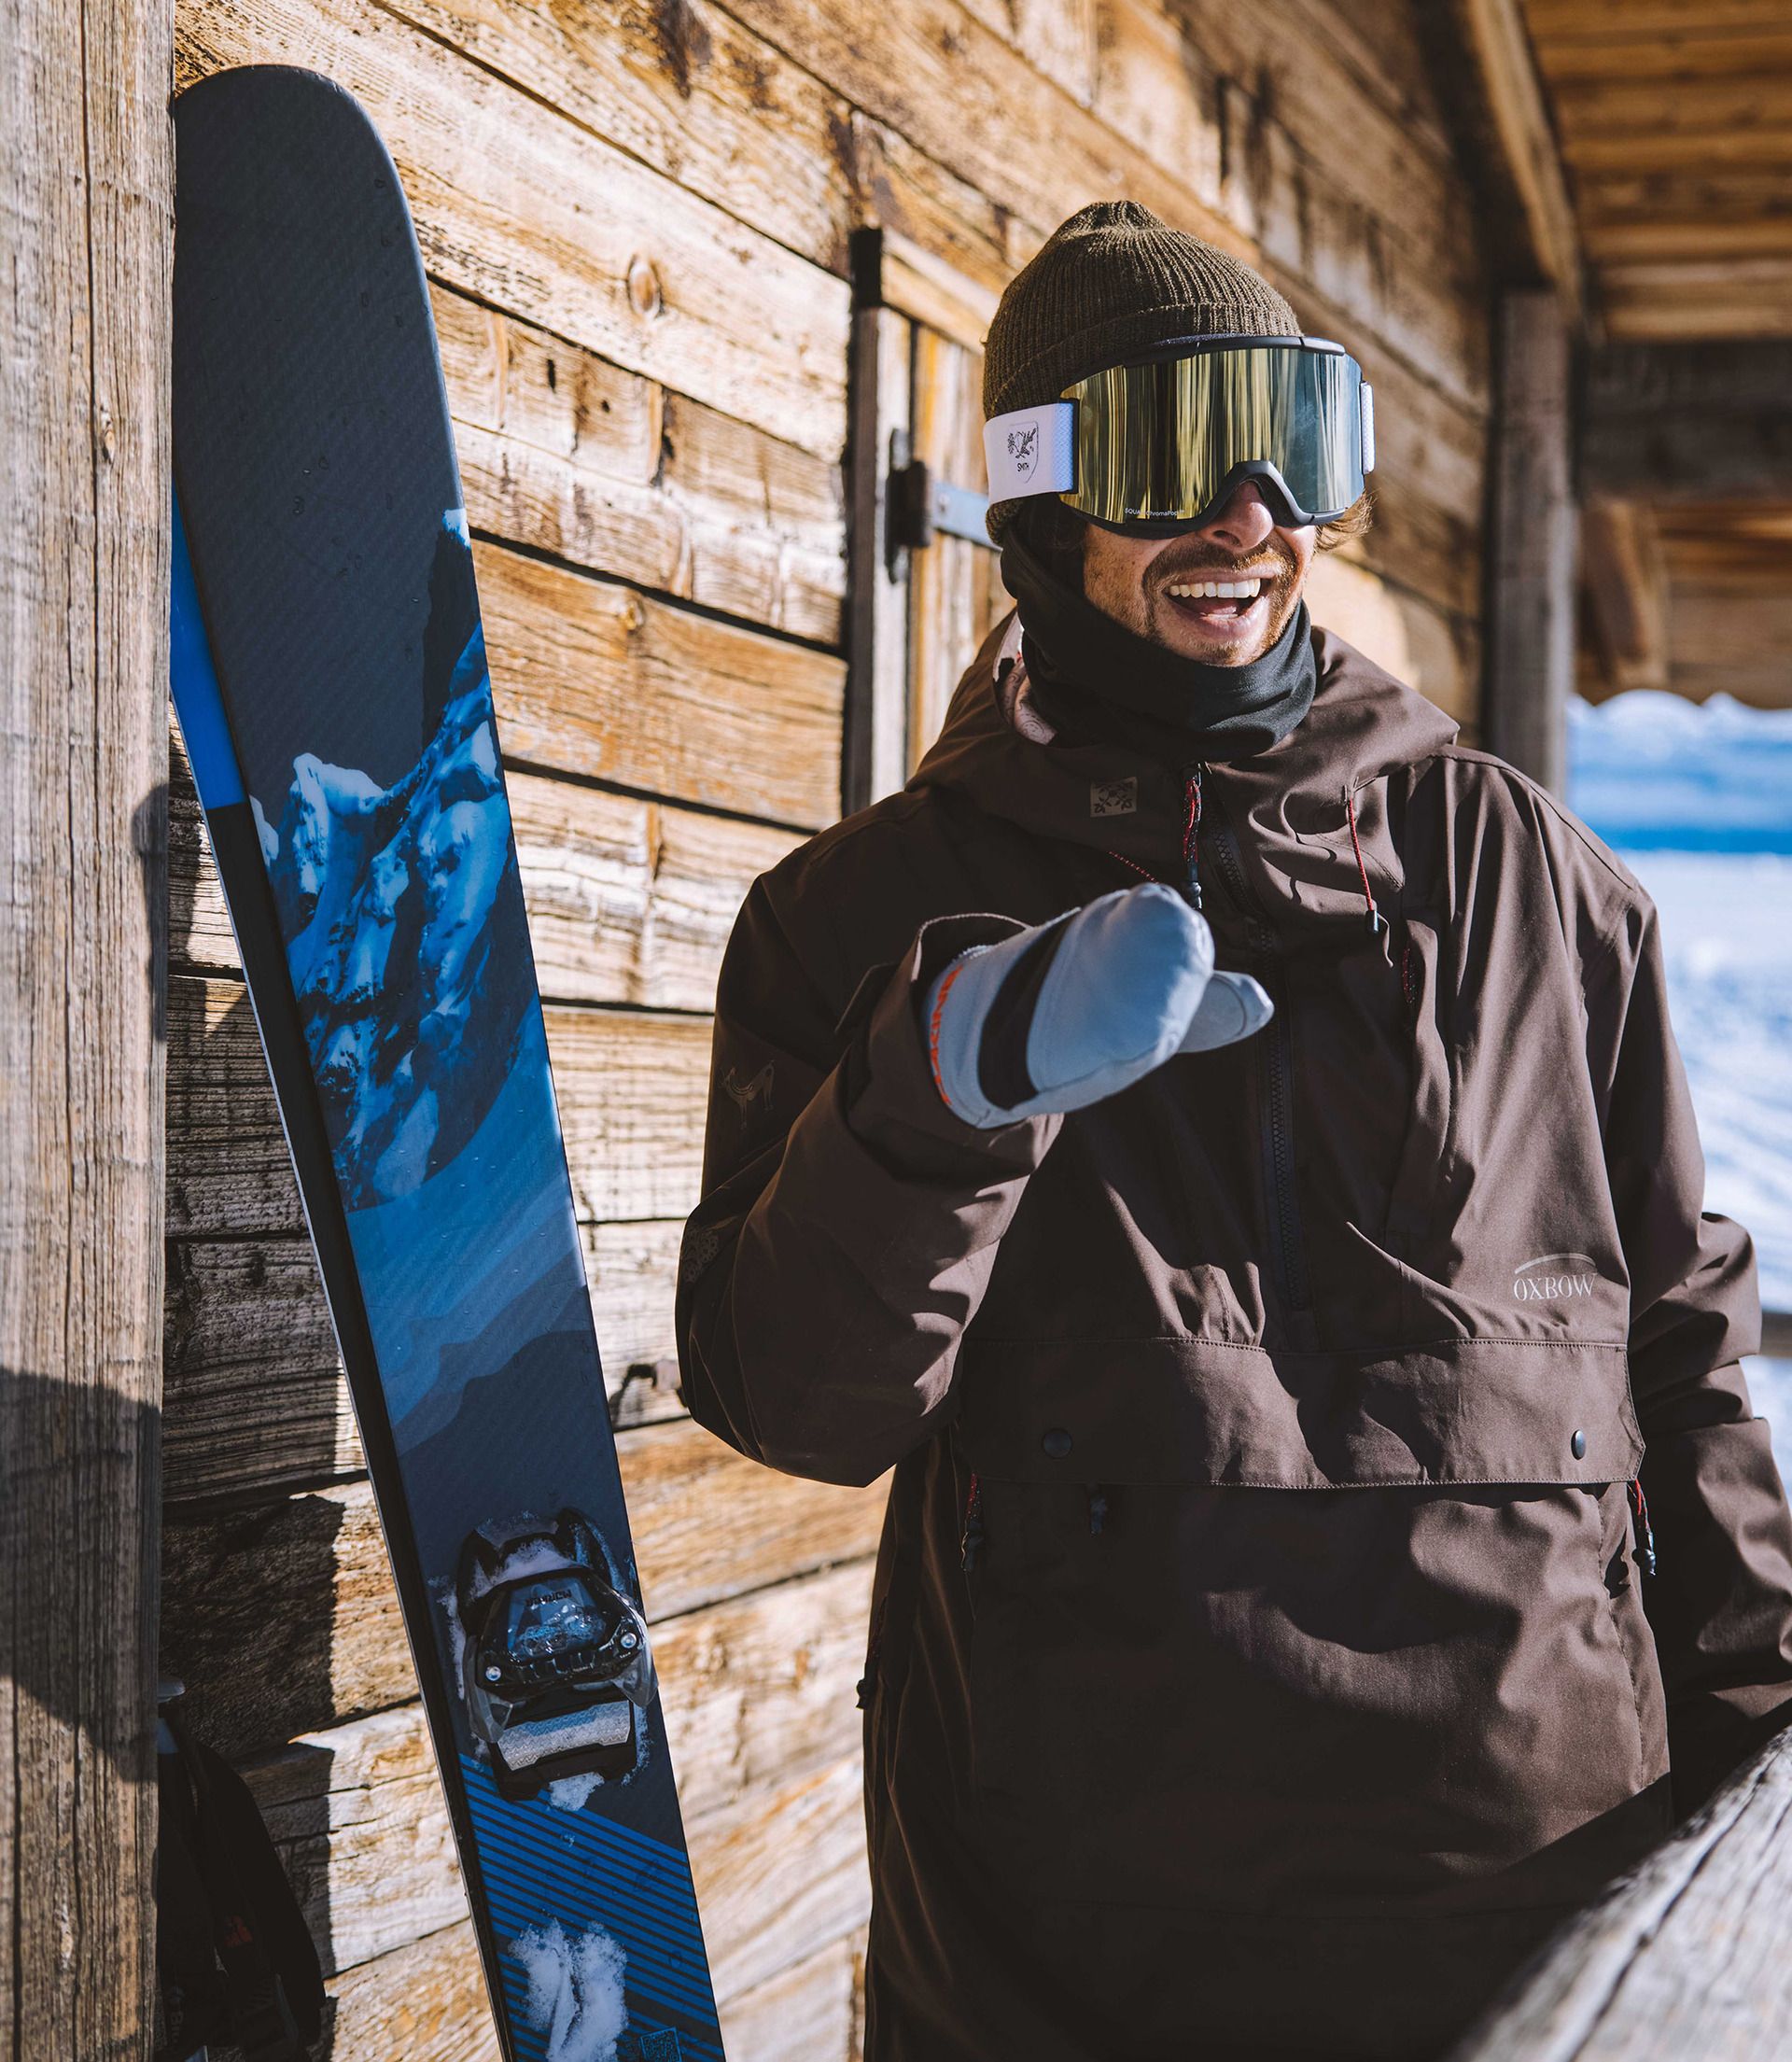 Entrevista al esquiador Clément Picart - Esquí Pro - Nevasport.com